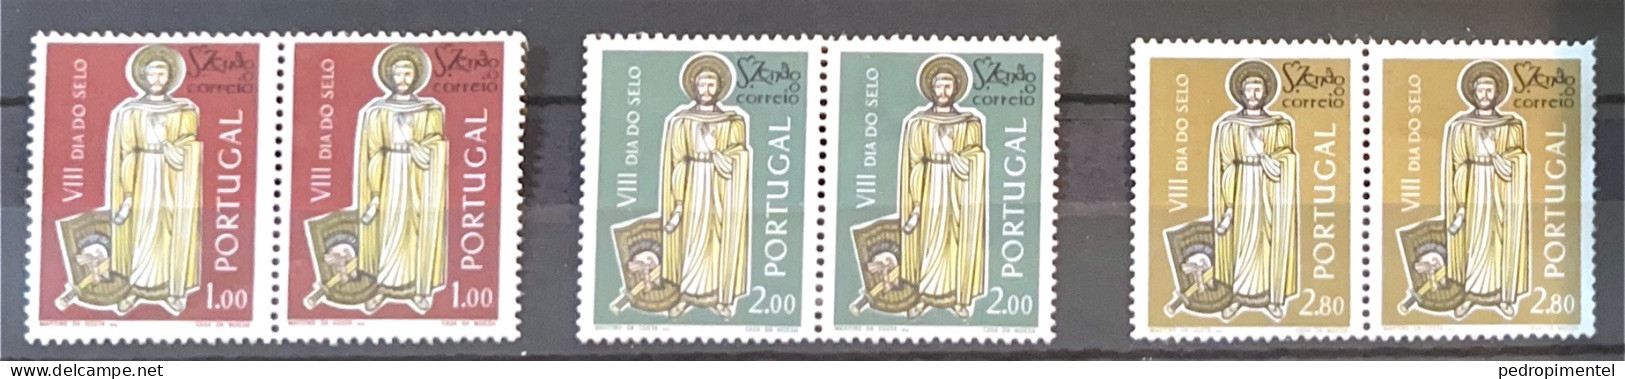 Portugal 1962 "Saint Zenon" Condition MNH #901-903 (pair) - Nuovi